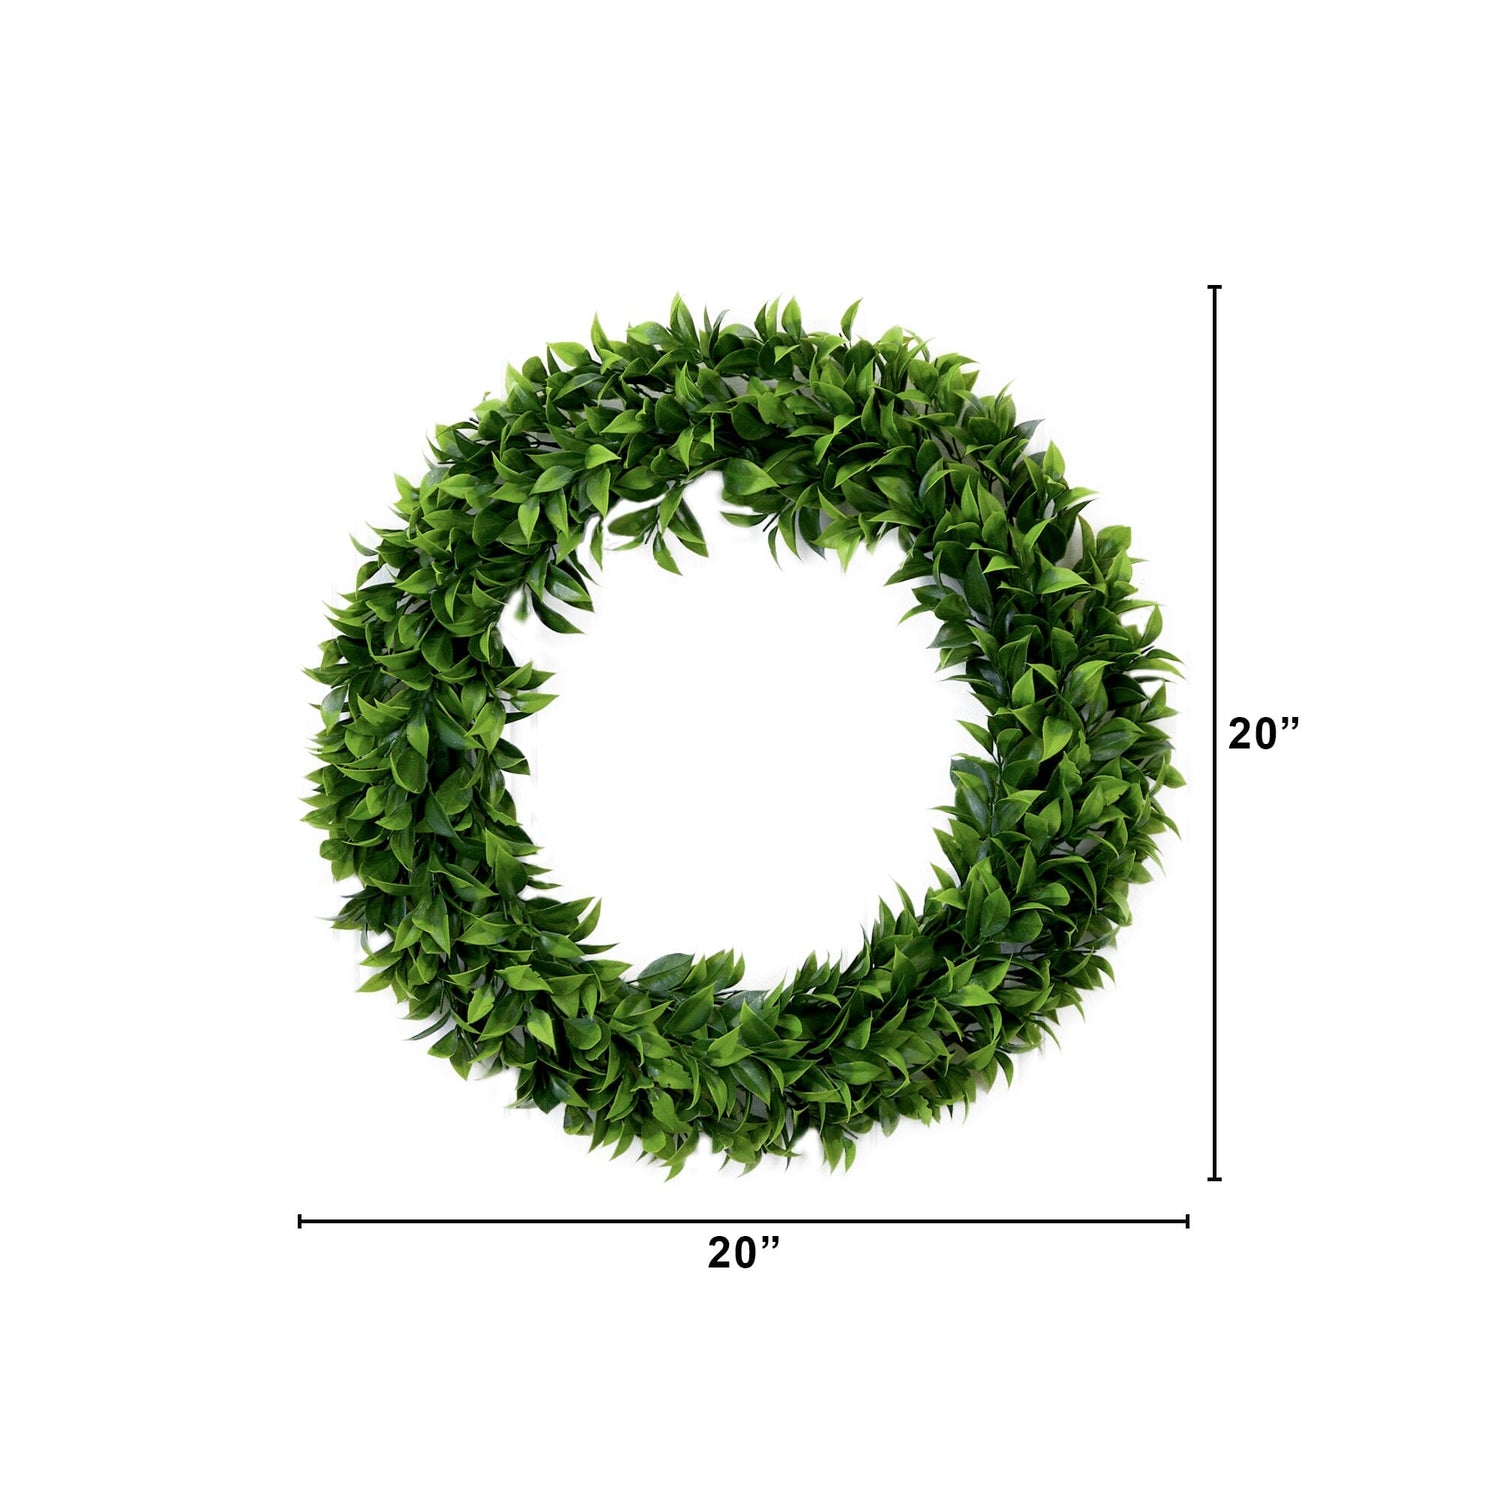 20” Artificial Bay Leaf Wreath